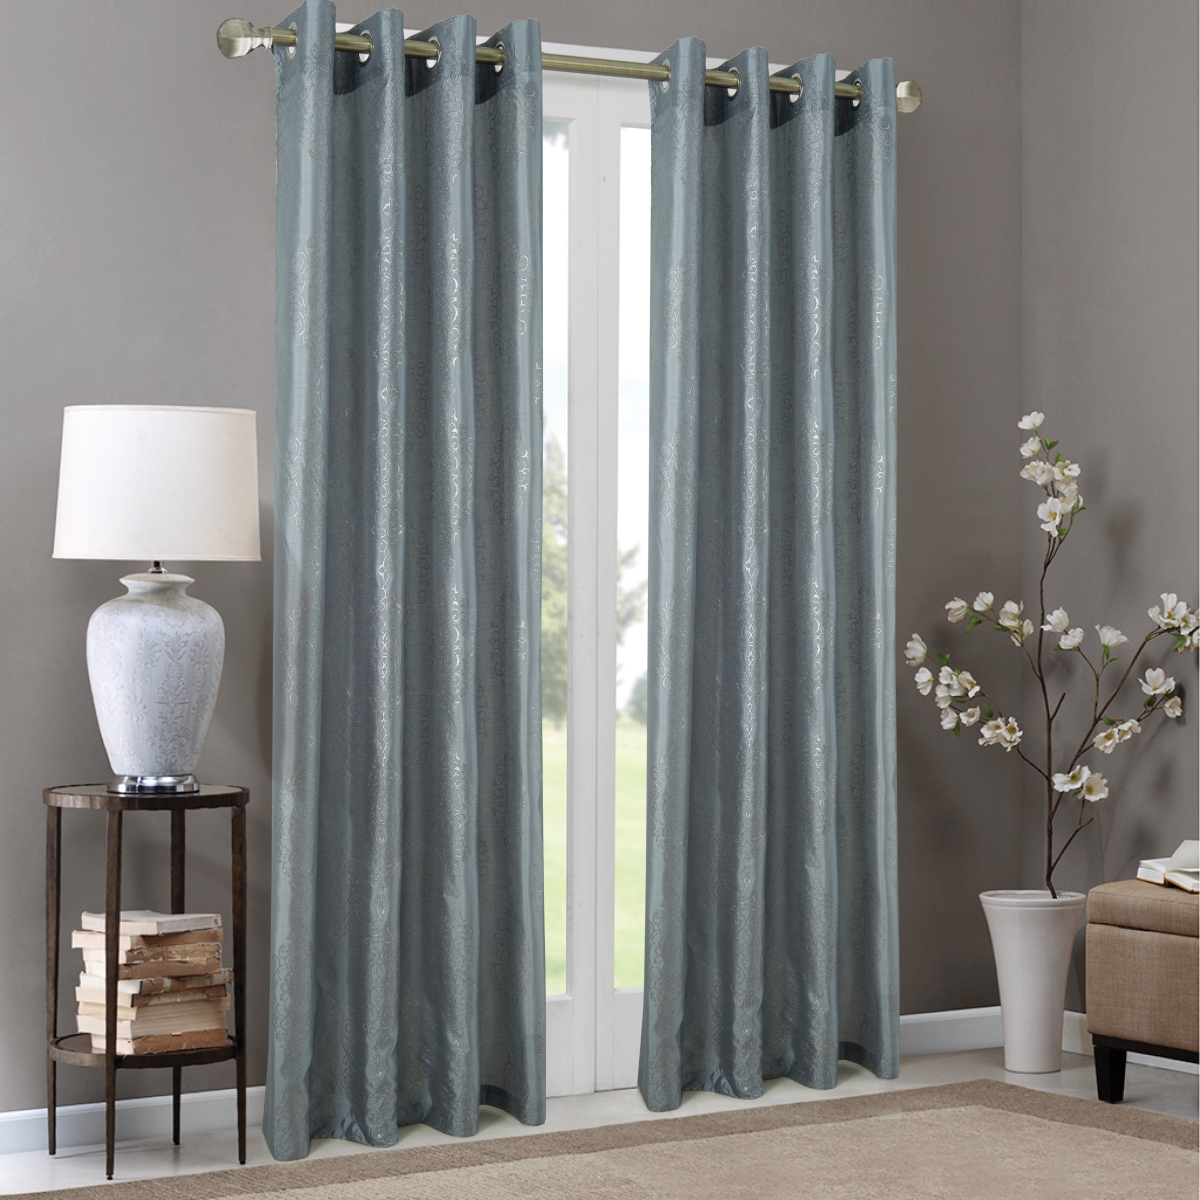 Pnr22217 54 X 84 In. Riverside Metallic Damask Faux Silk Grommet Single Curtain Panel, Charcoal